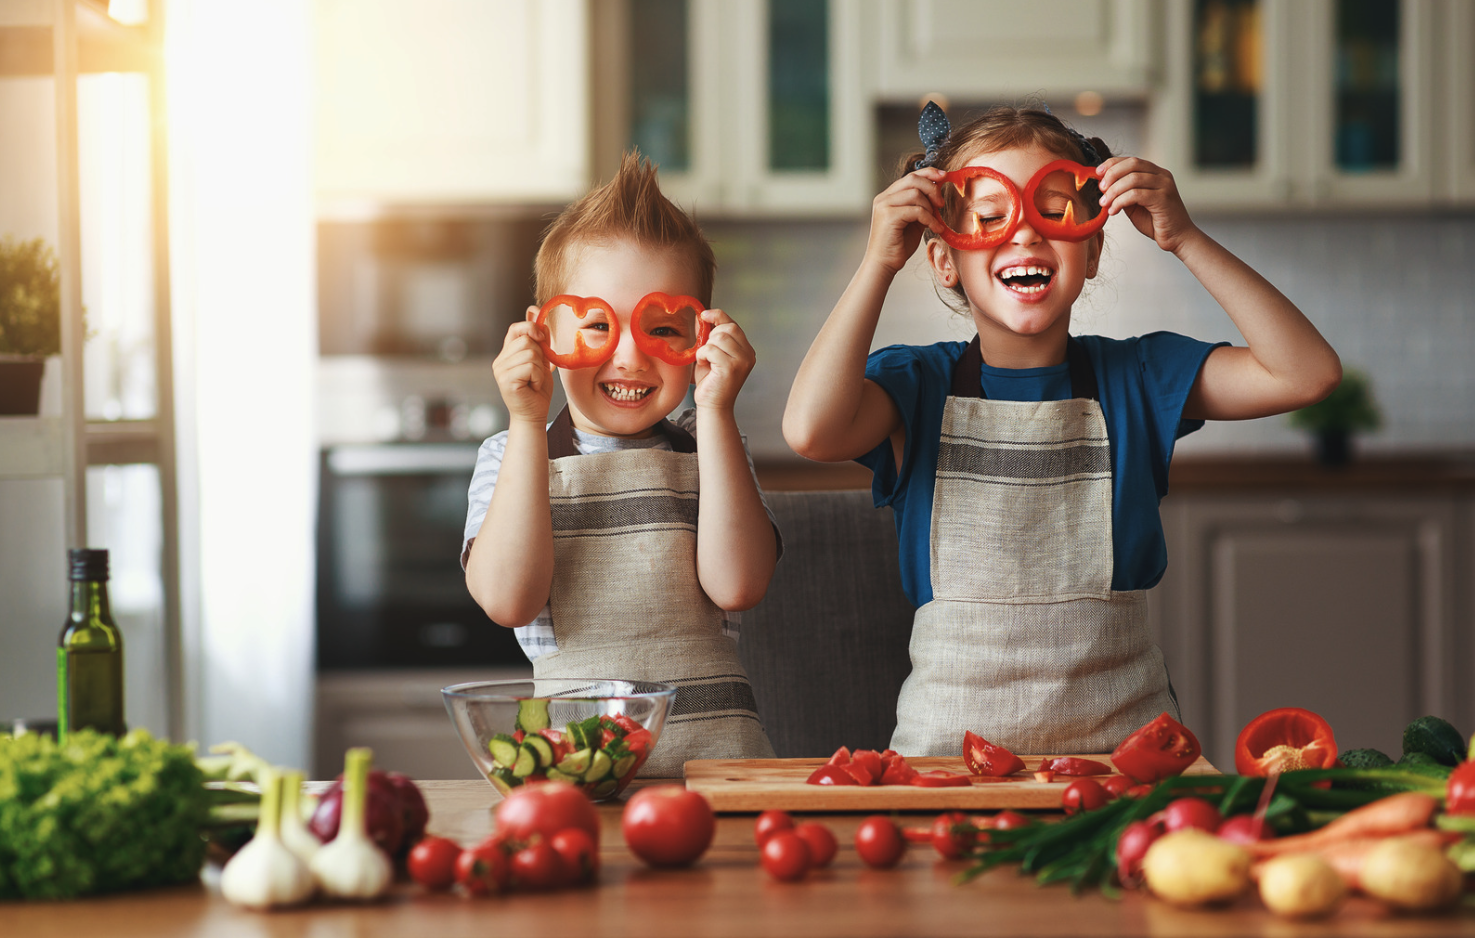 Dva otroka v kuhinji režeta zelenjavo in si pred oči postavita narezano papriko.